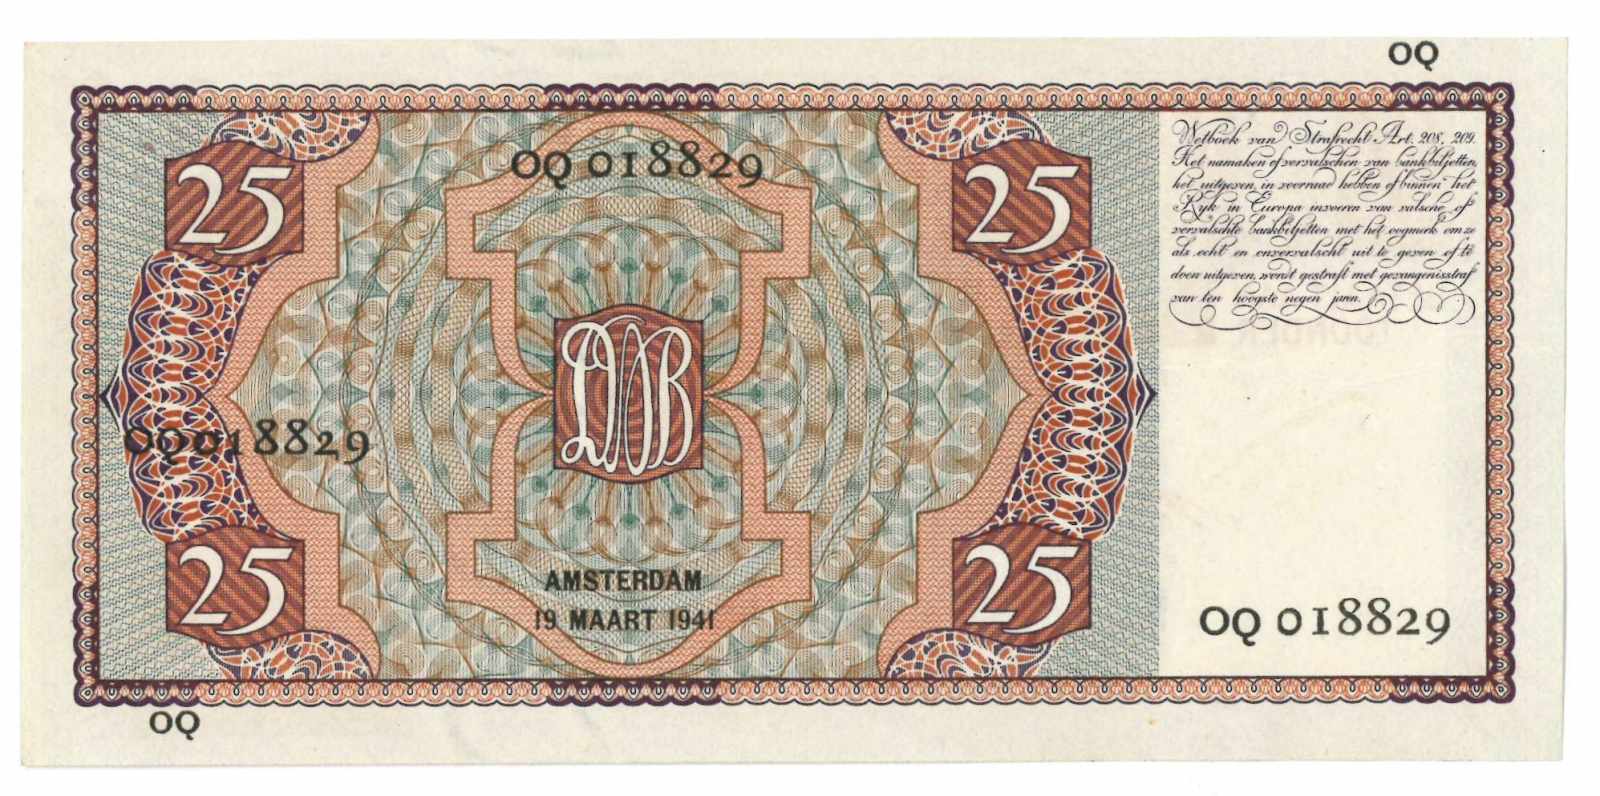 Nederland. 25 gulden. Bankbiljet. Type 1931. Mees - Nagenoeg UNC. (Alm. 76-2. AV. 48.2d). - Image 2 of 2